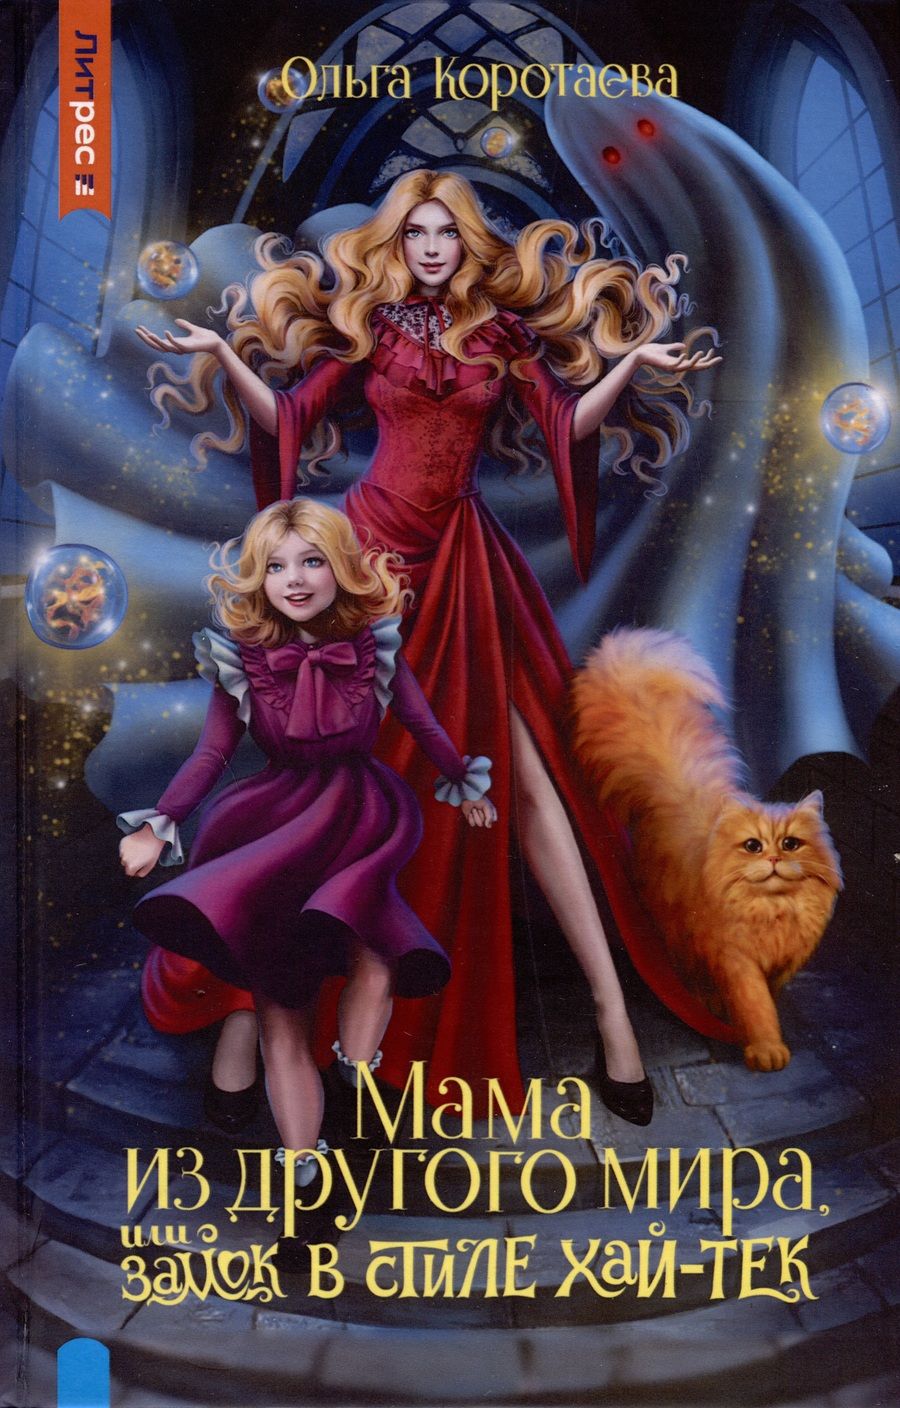 Обложка книги "Коротаева: Мама из другого мира, или Замок в стиле хай-тек"